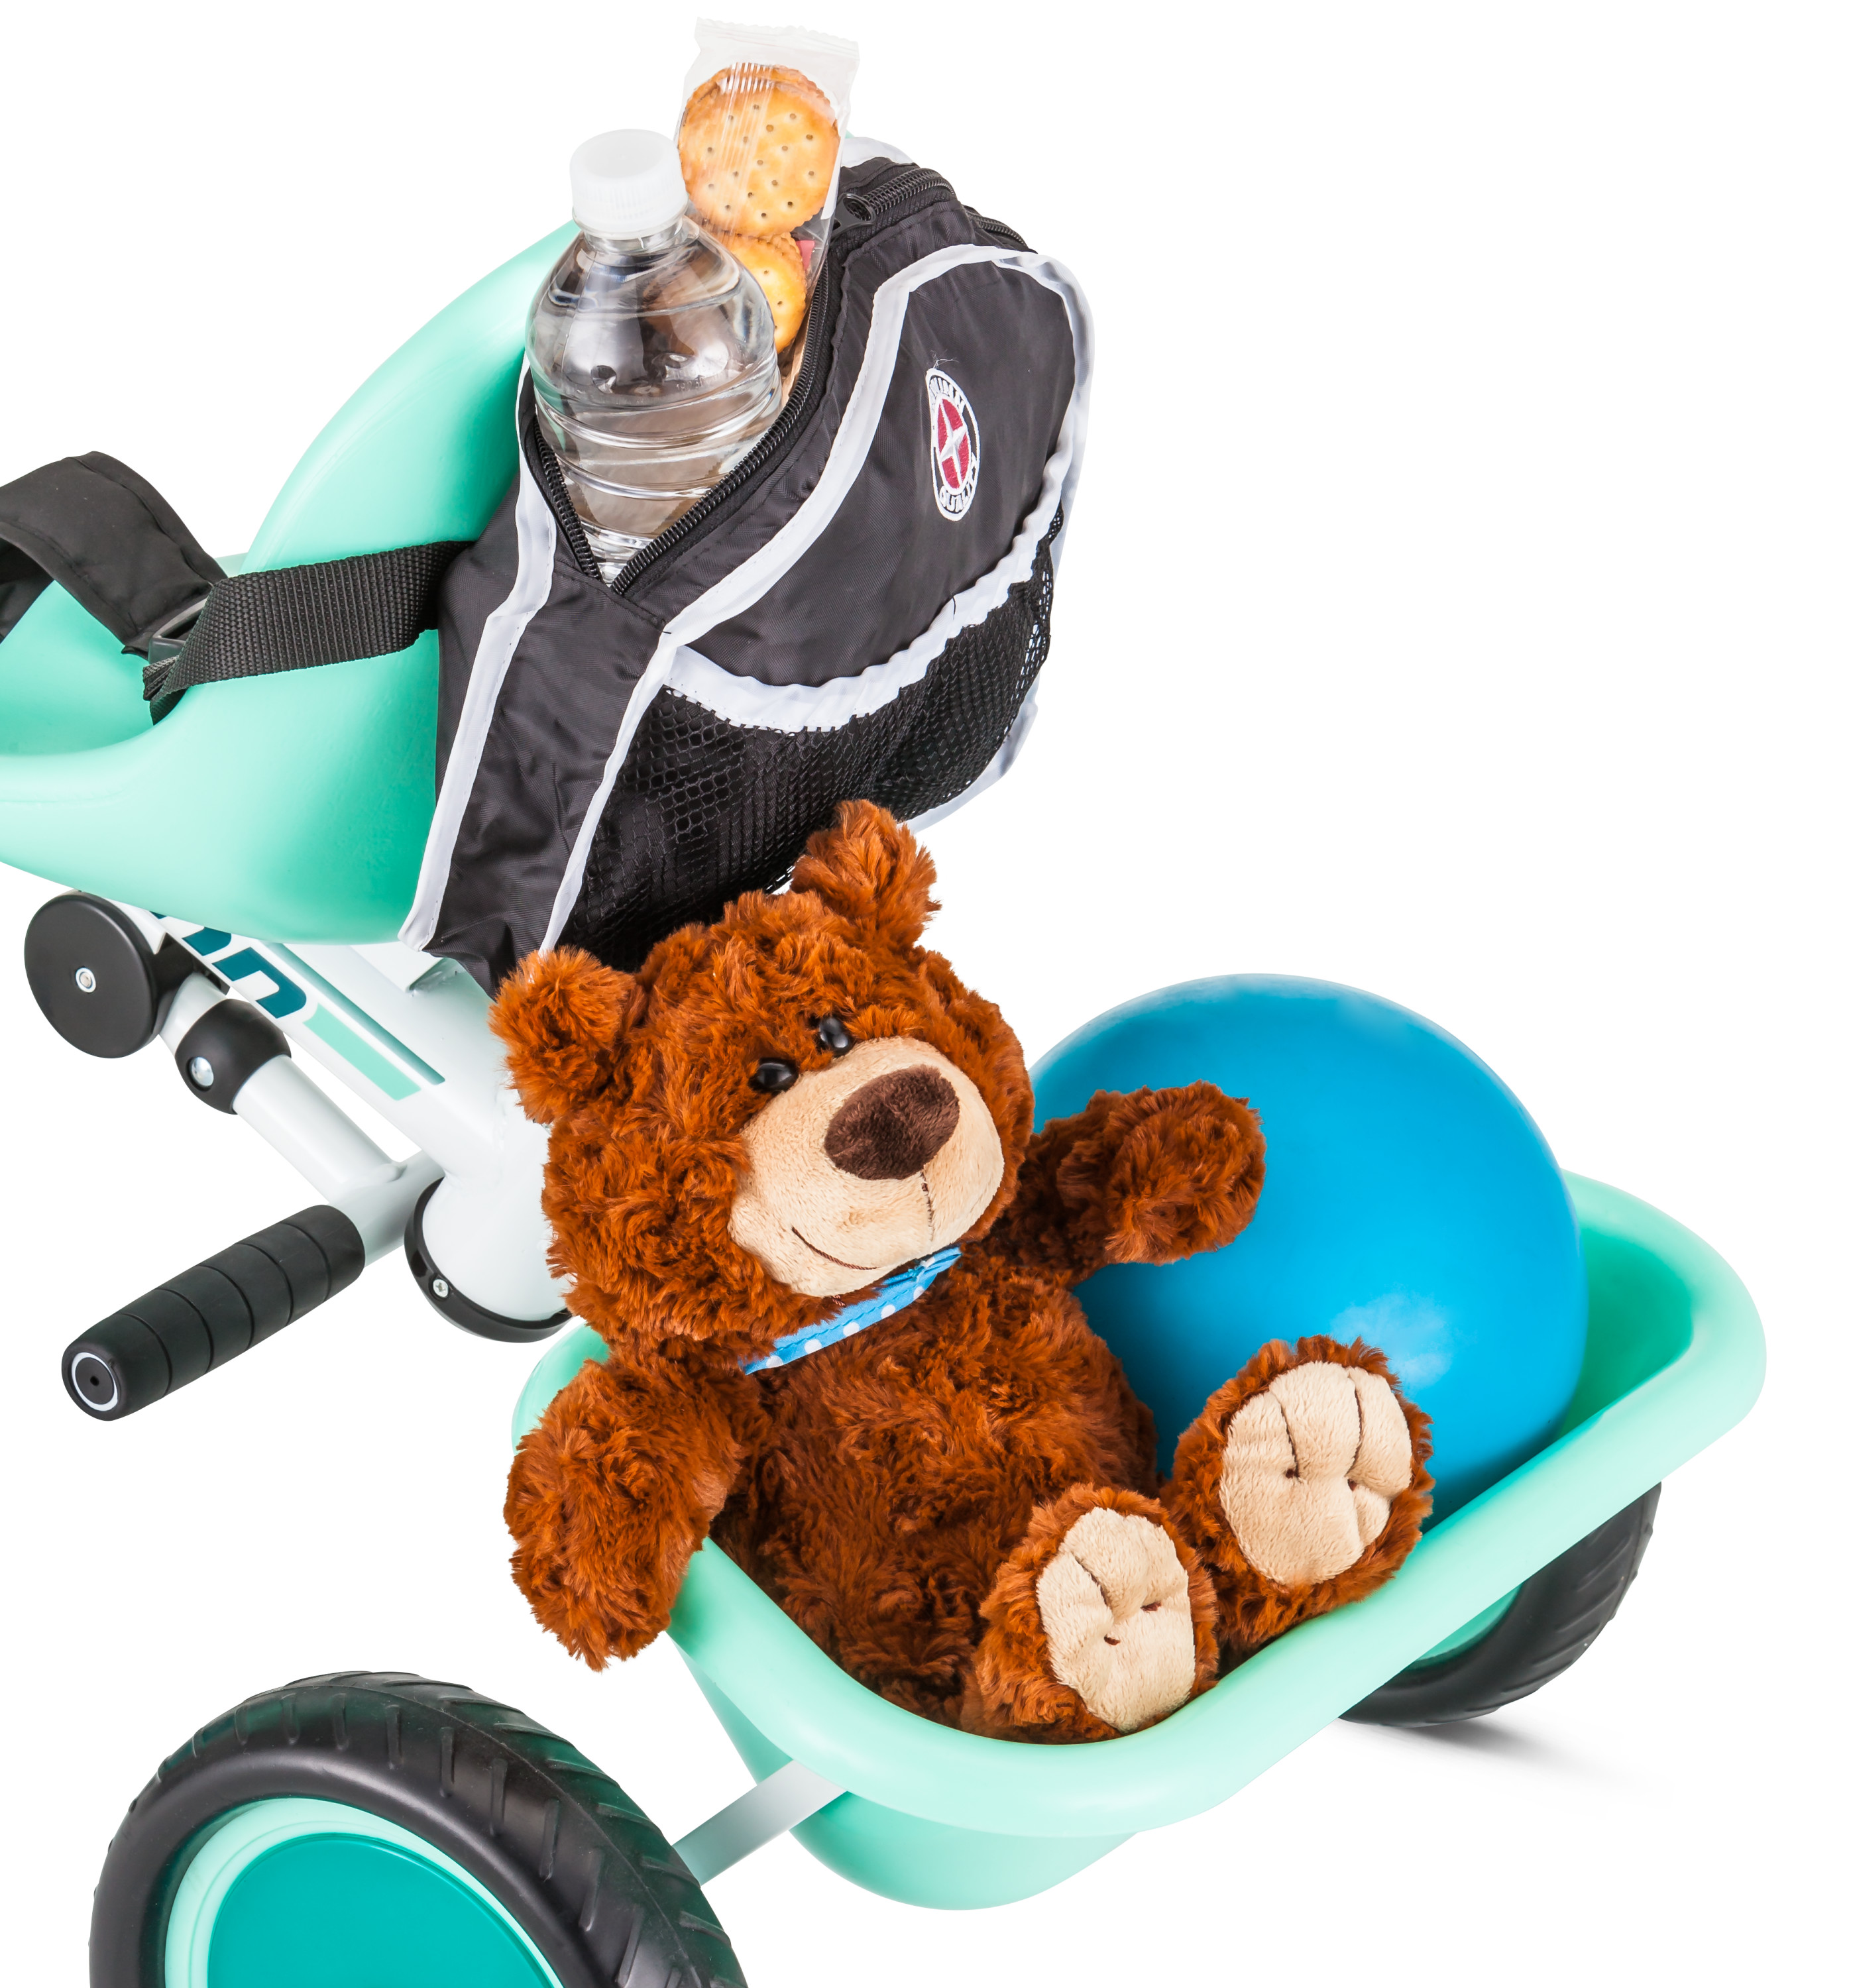 Schwinn Easy-Steer Tricycle with Push/Steer Handle, ages 2 - 4, teal, toddler bike - image 5 of 9